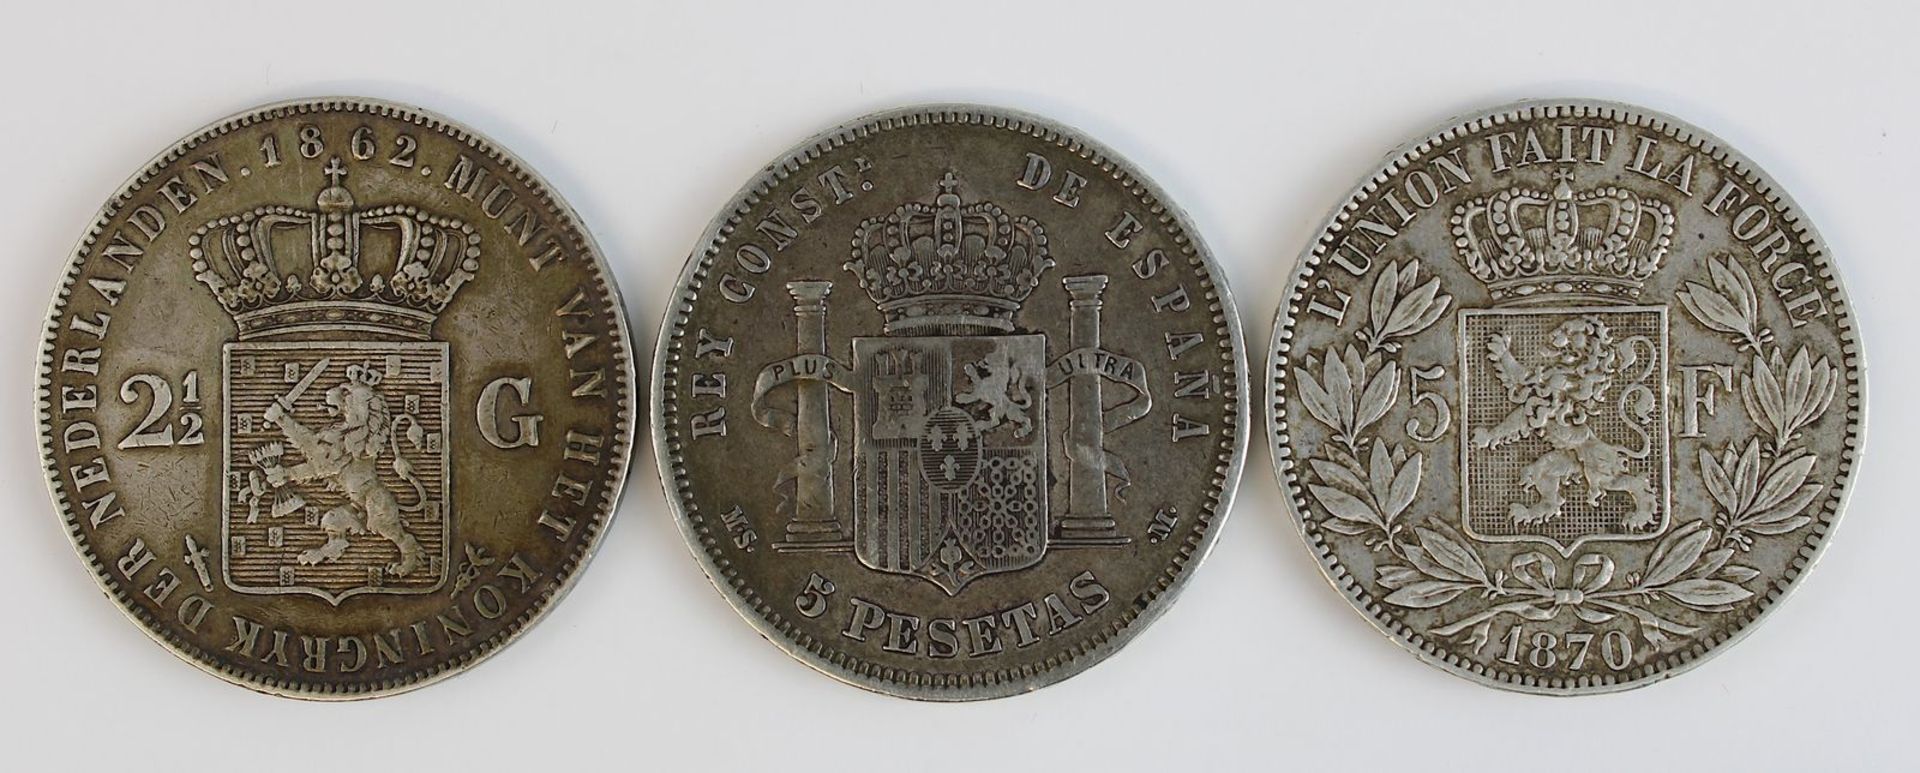 Drei Silbermünzen 2. H. 19. Jh., Niederlande, Belgien u. Spanien: zweieinhalb Gulden, Wilhelm III, - Bild 2 aus 2